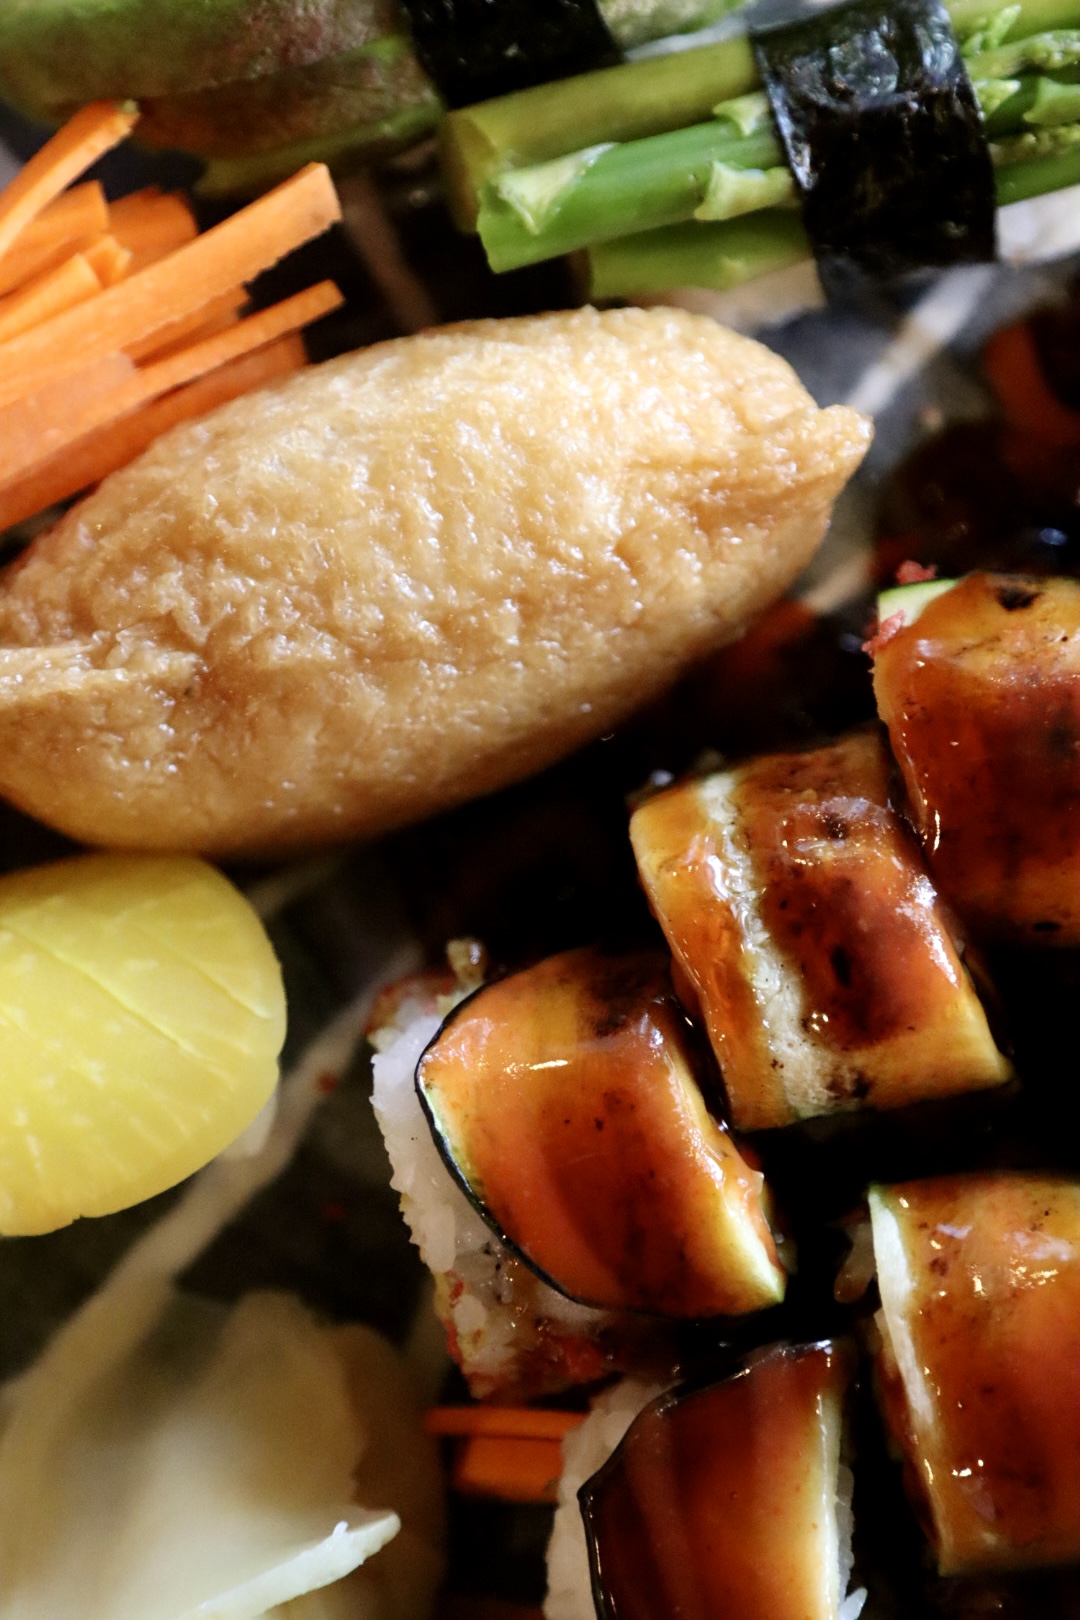 Yoshimatsu vegan sushi rolls